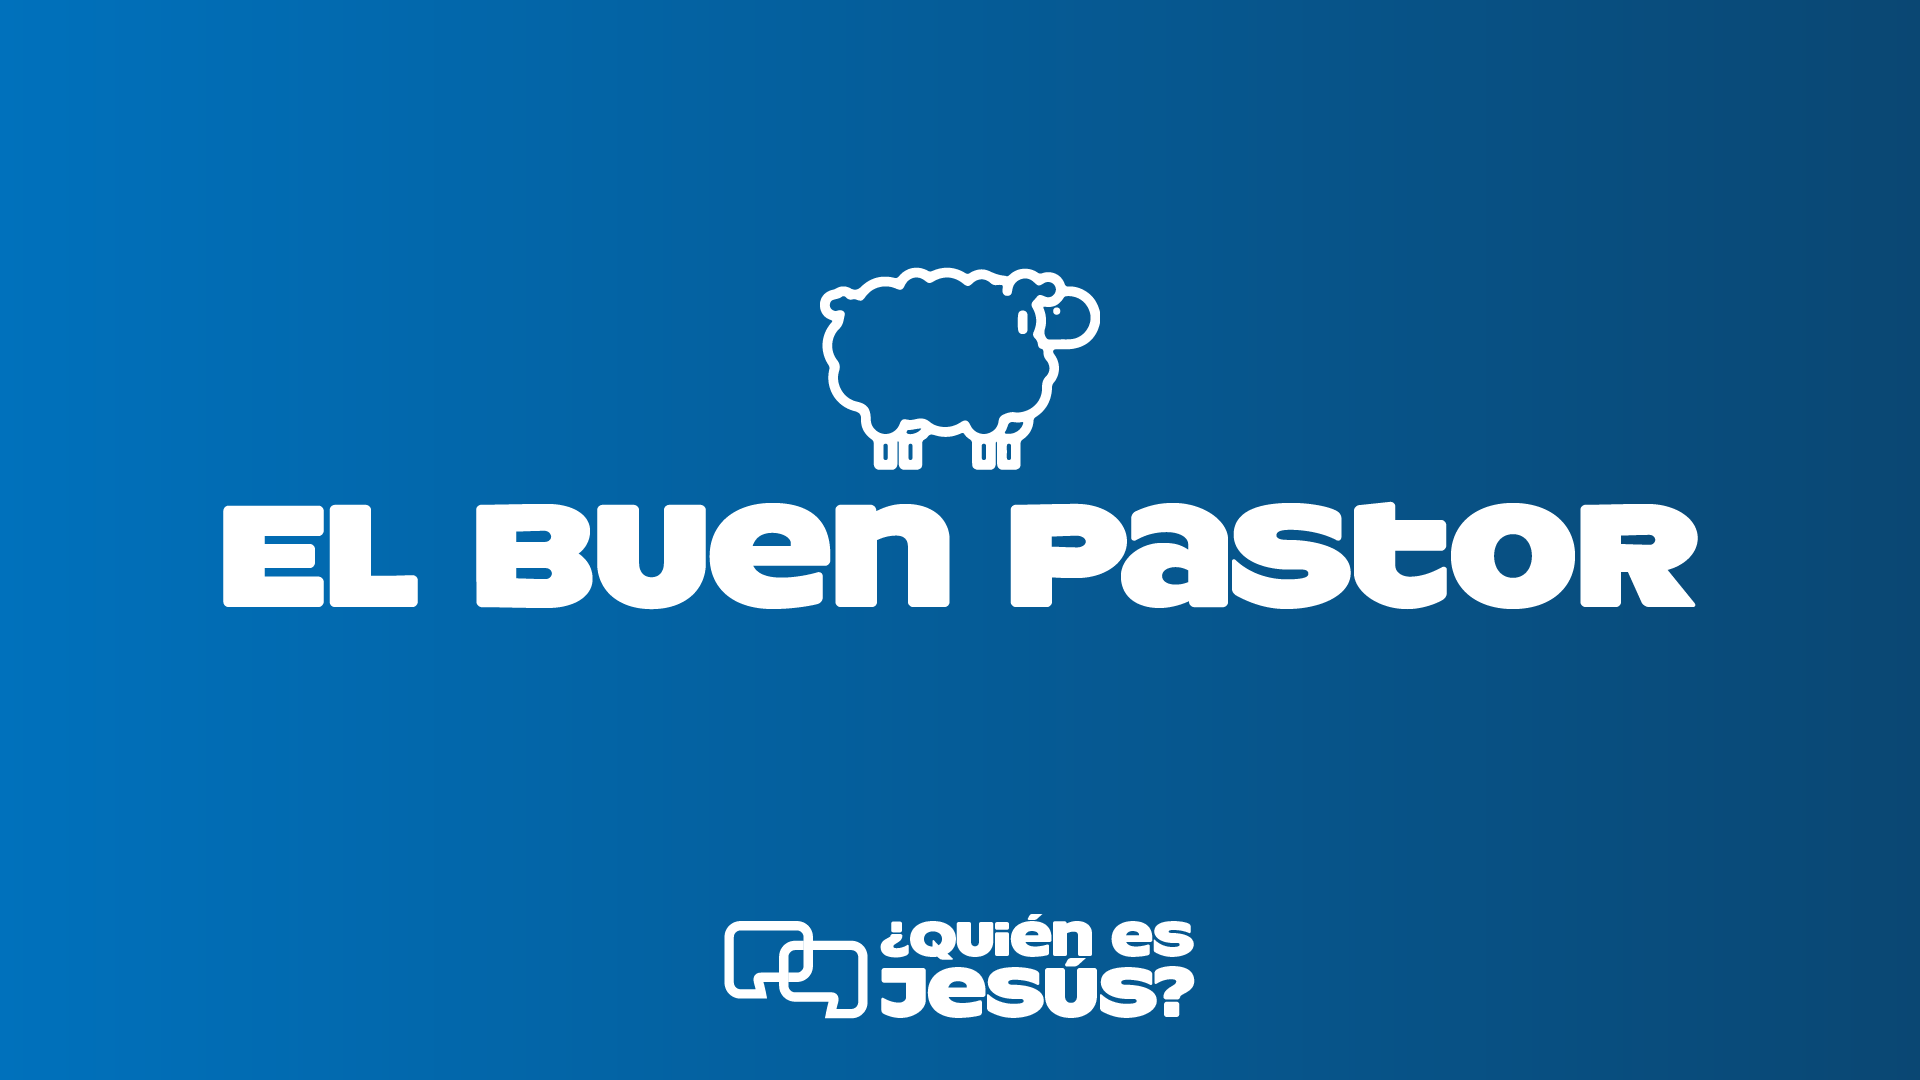 5. El Buen Pastor